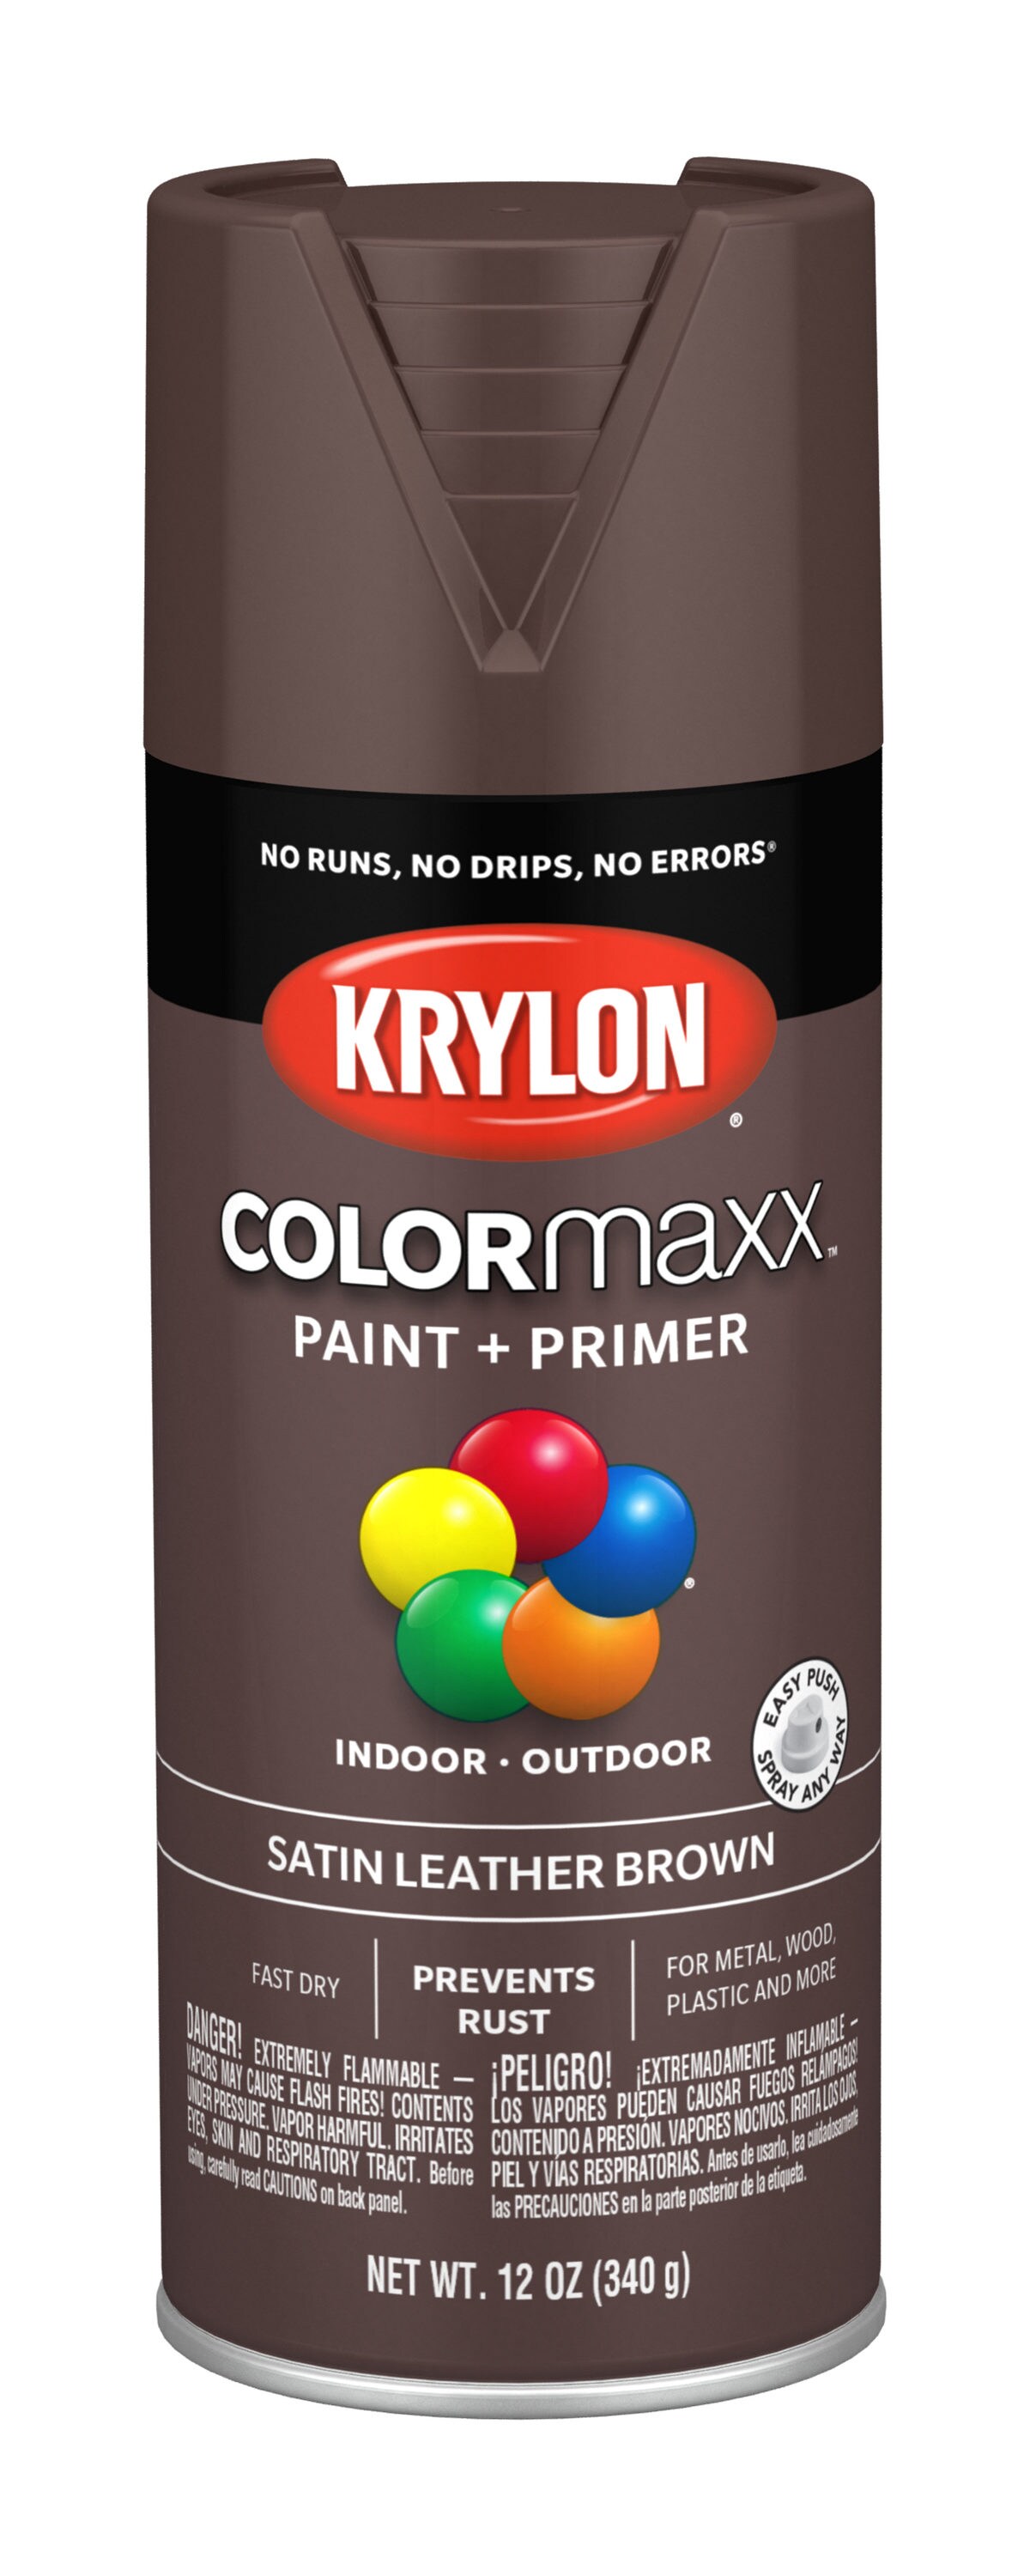 RudedogUSA 2-Can Spray Paint Leather Bag #1002